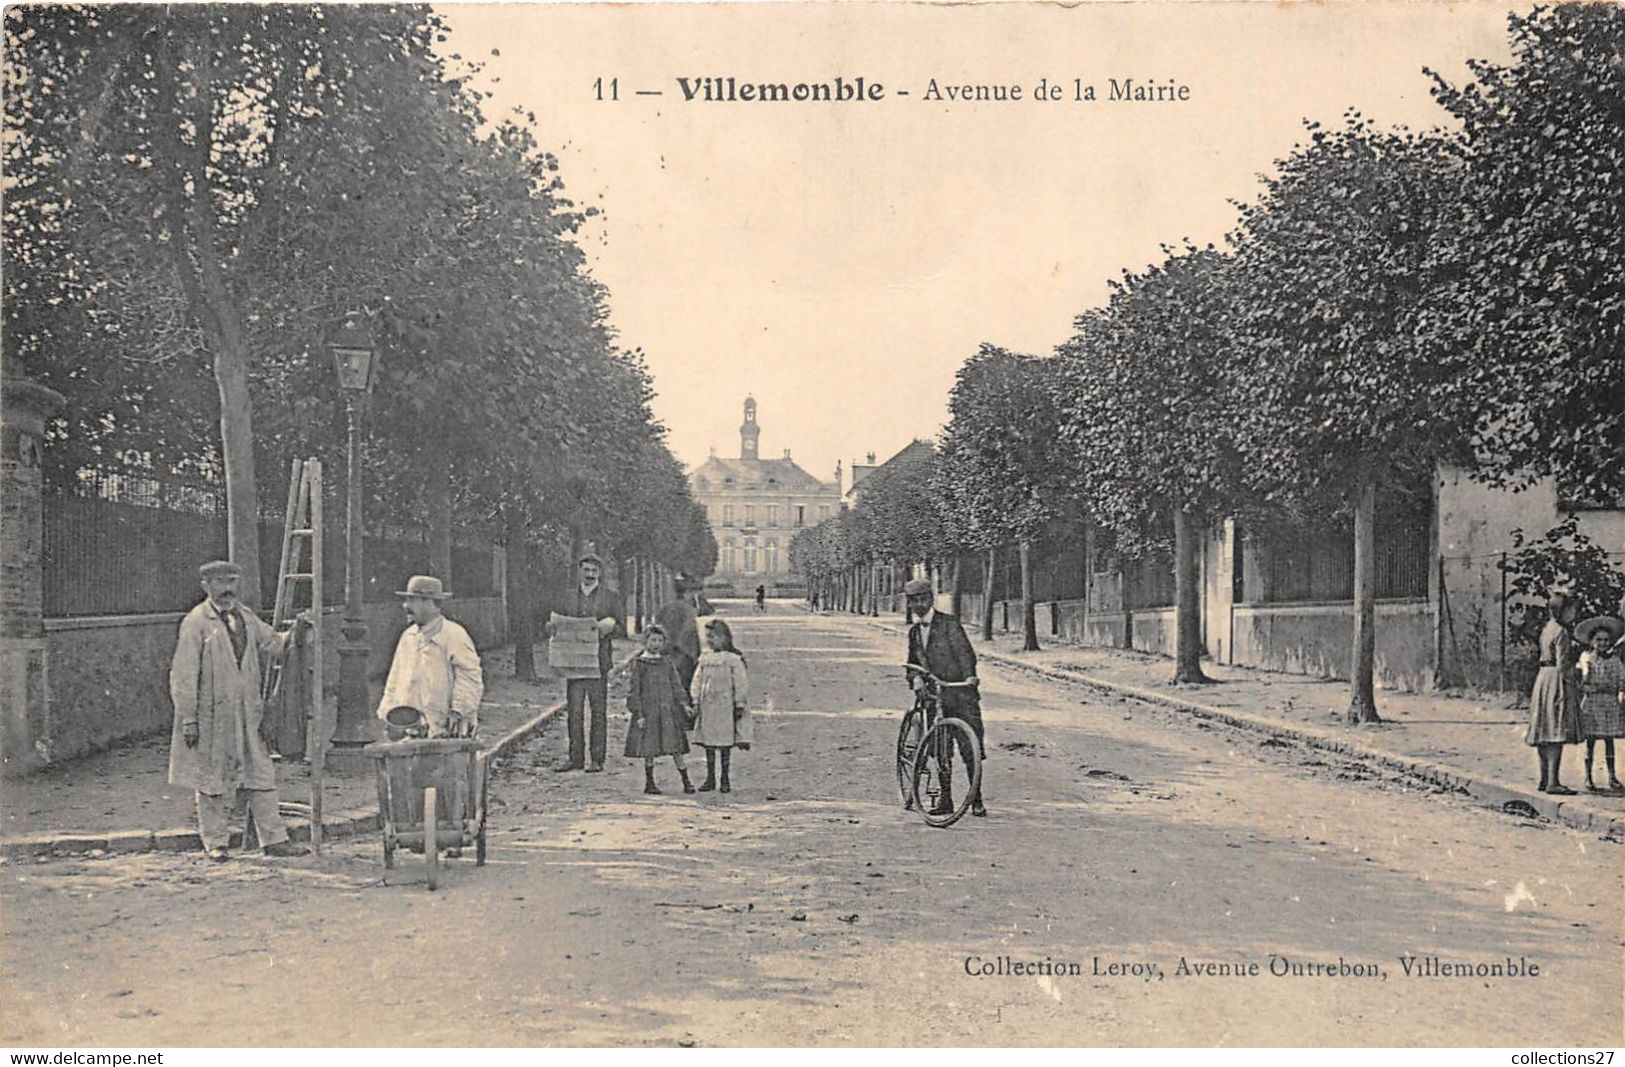 93-VILLEMONBLE-AVENUE DE LA MAIRIE - Villemomble